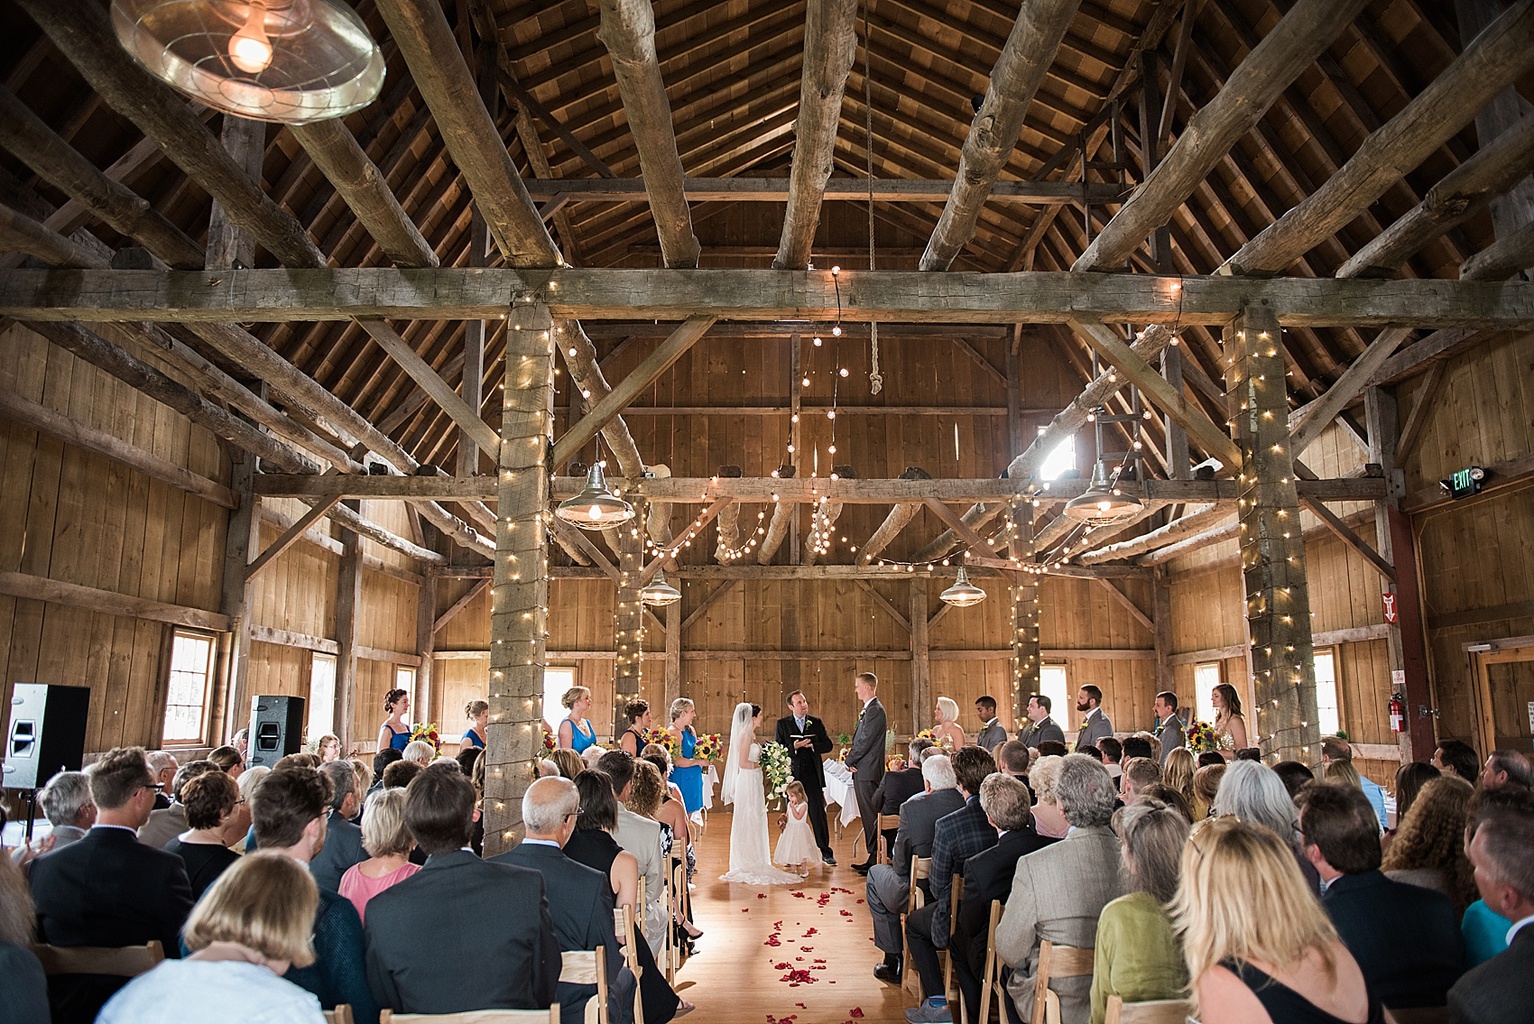 Traverse City Wedding Venues: Indoor wedding ceremony at Traverse City Wedding Barn, also called the Garvey Barn, in Northern Michigan